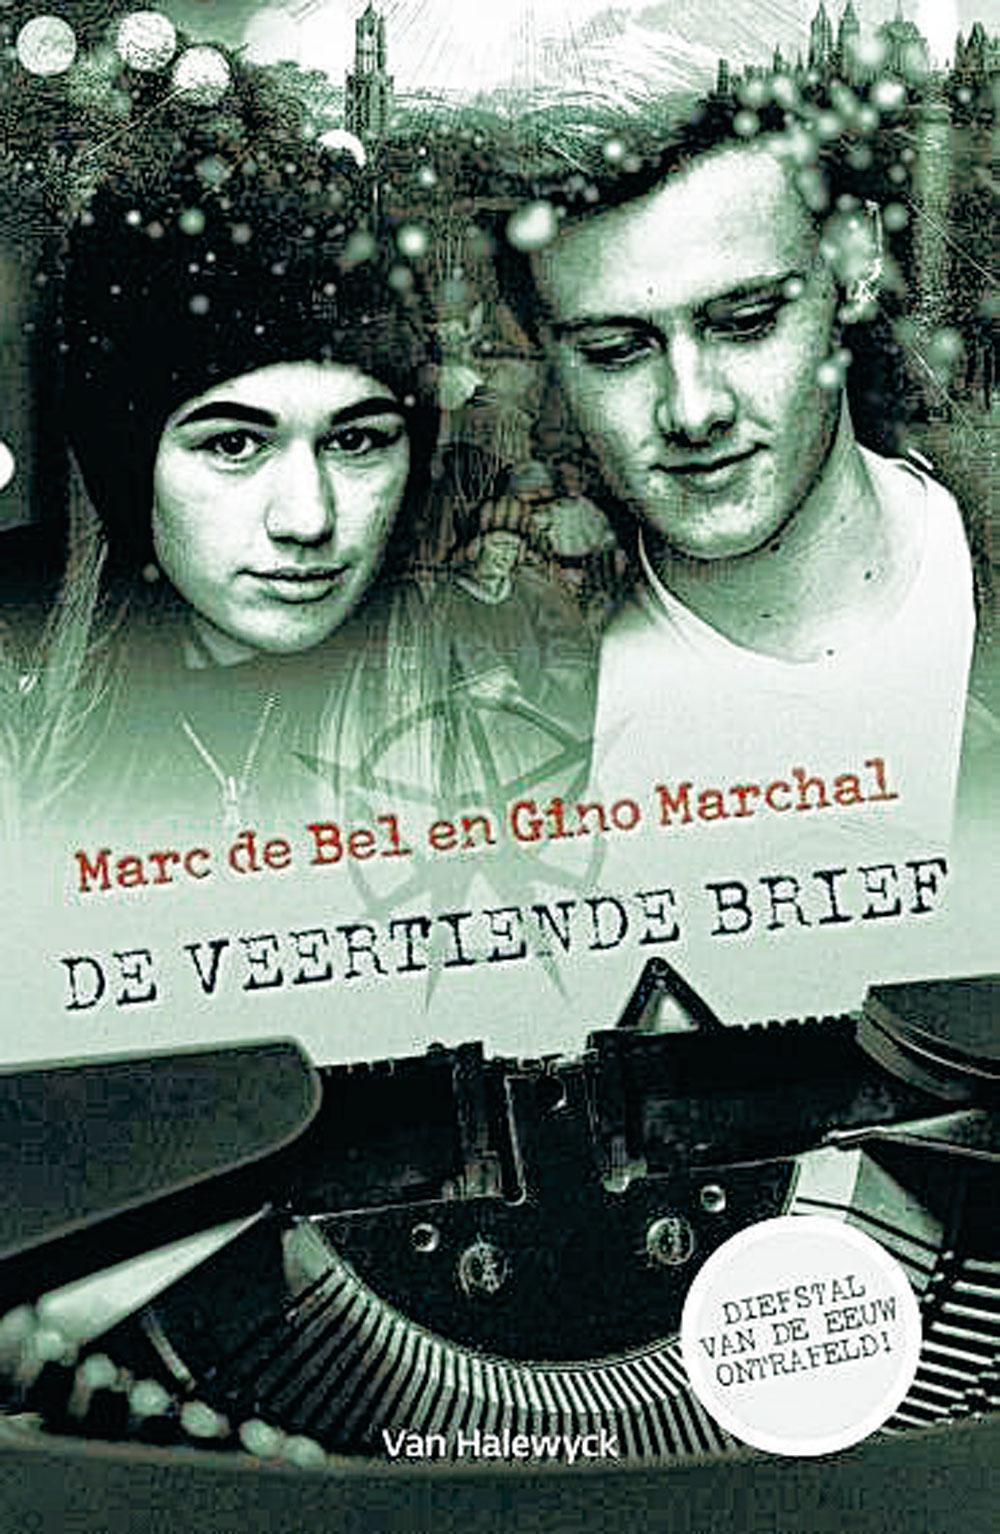 Marc de Bel en Gino Marchal, De veertiende brief, Van Halewyck, Antwerpen, 15,99 euro.